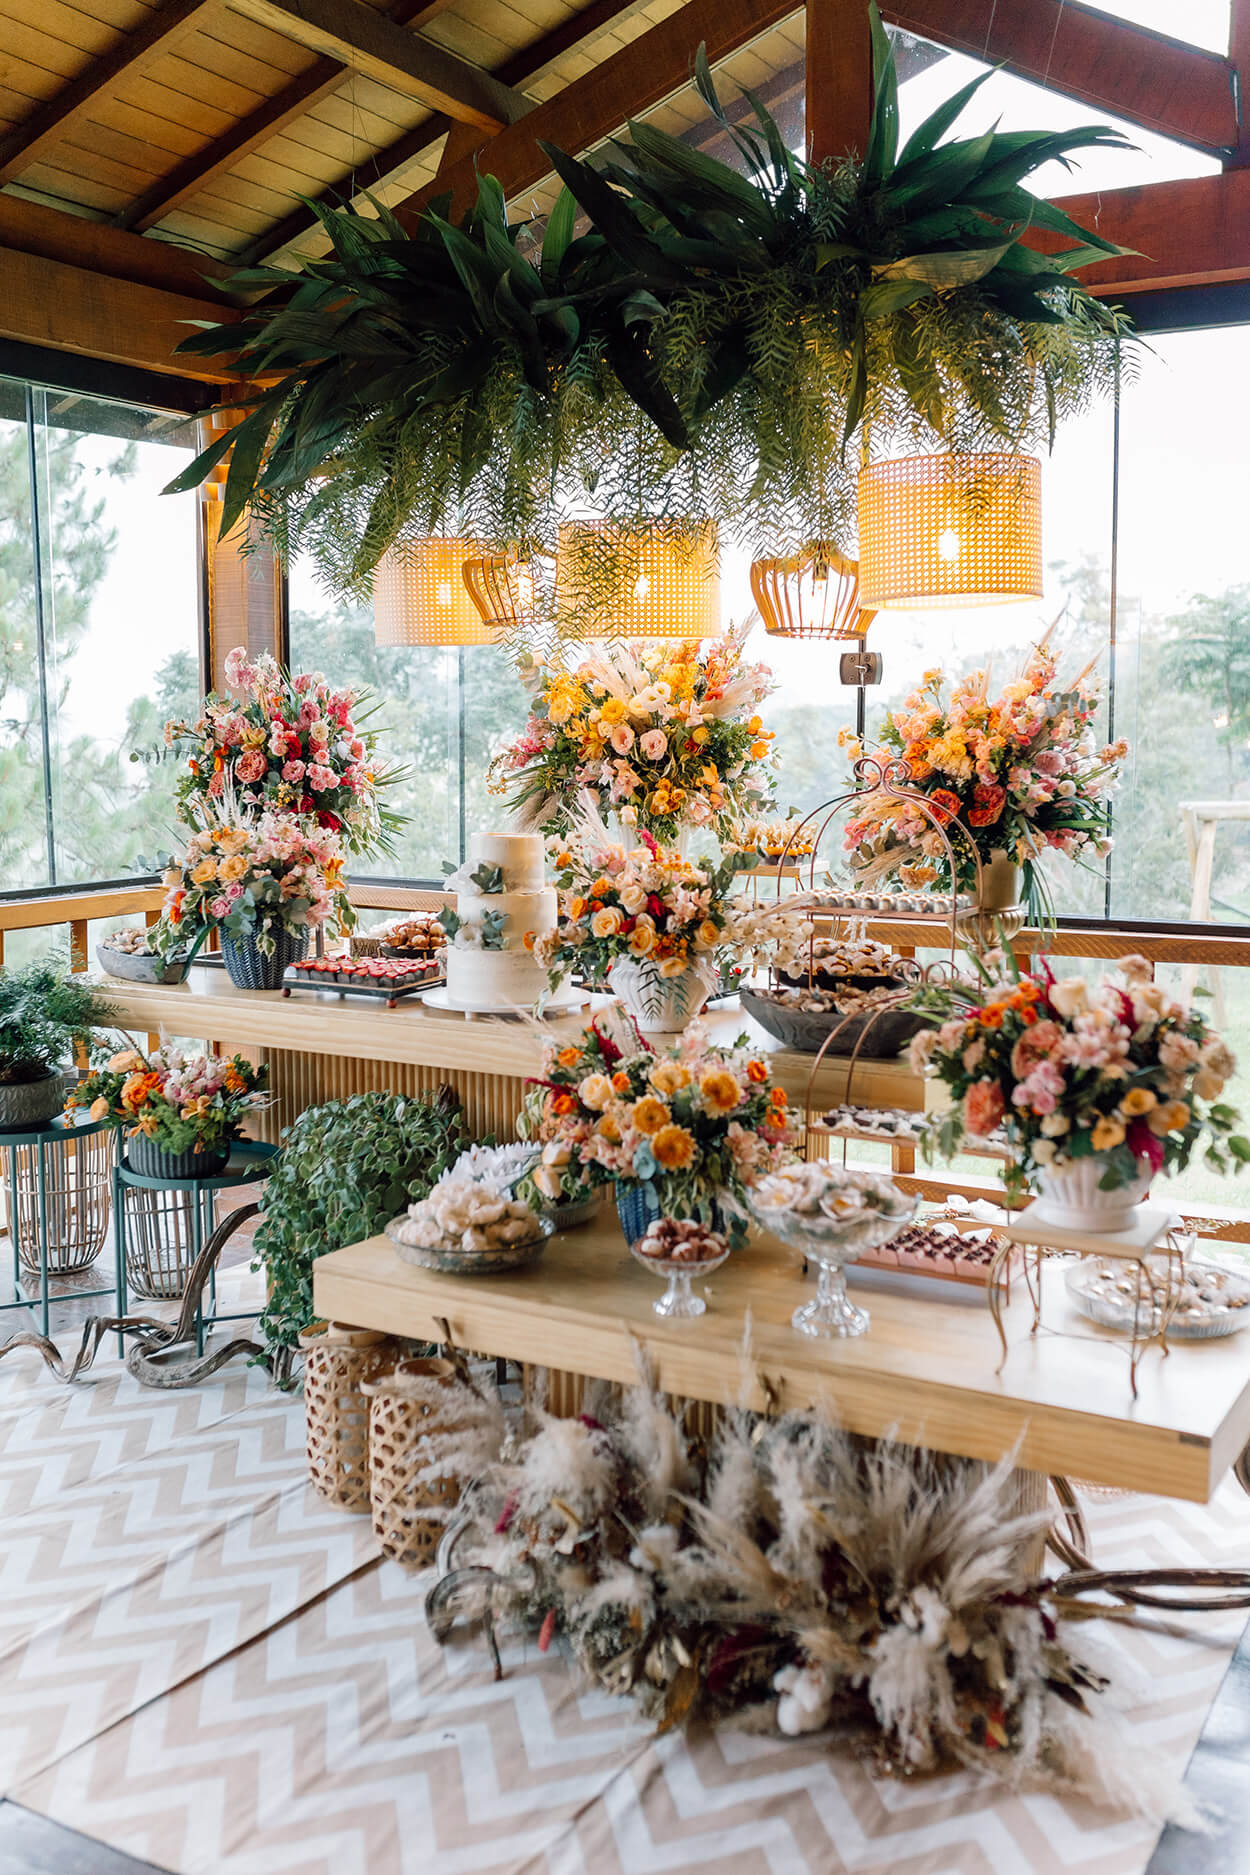 Mesa com bolo de casamenot e arranjos com flores coloridas